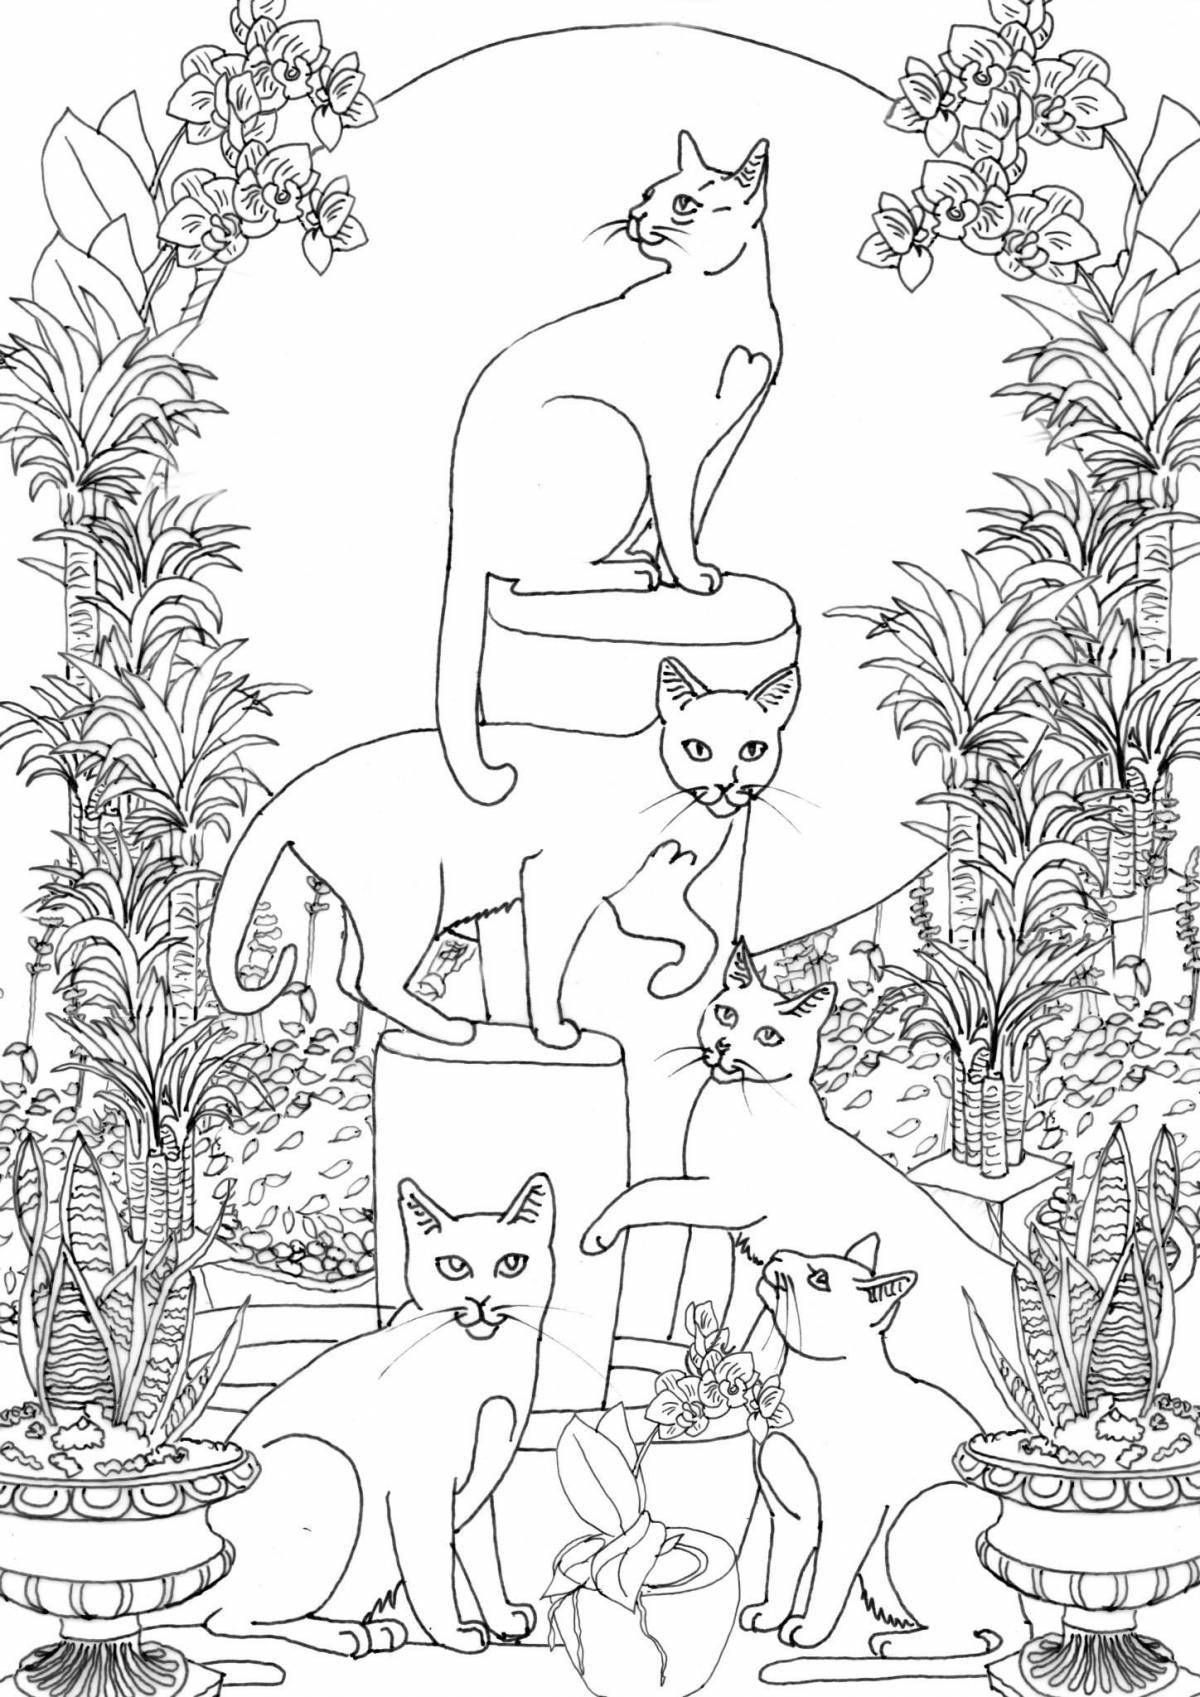 Раскраска причудливая кошачья семья